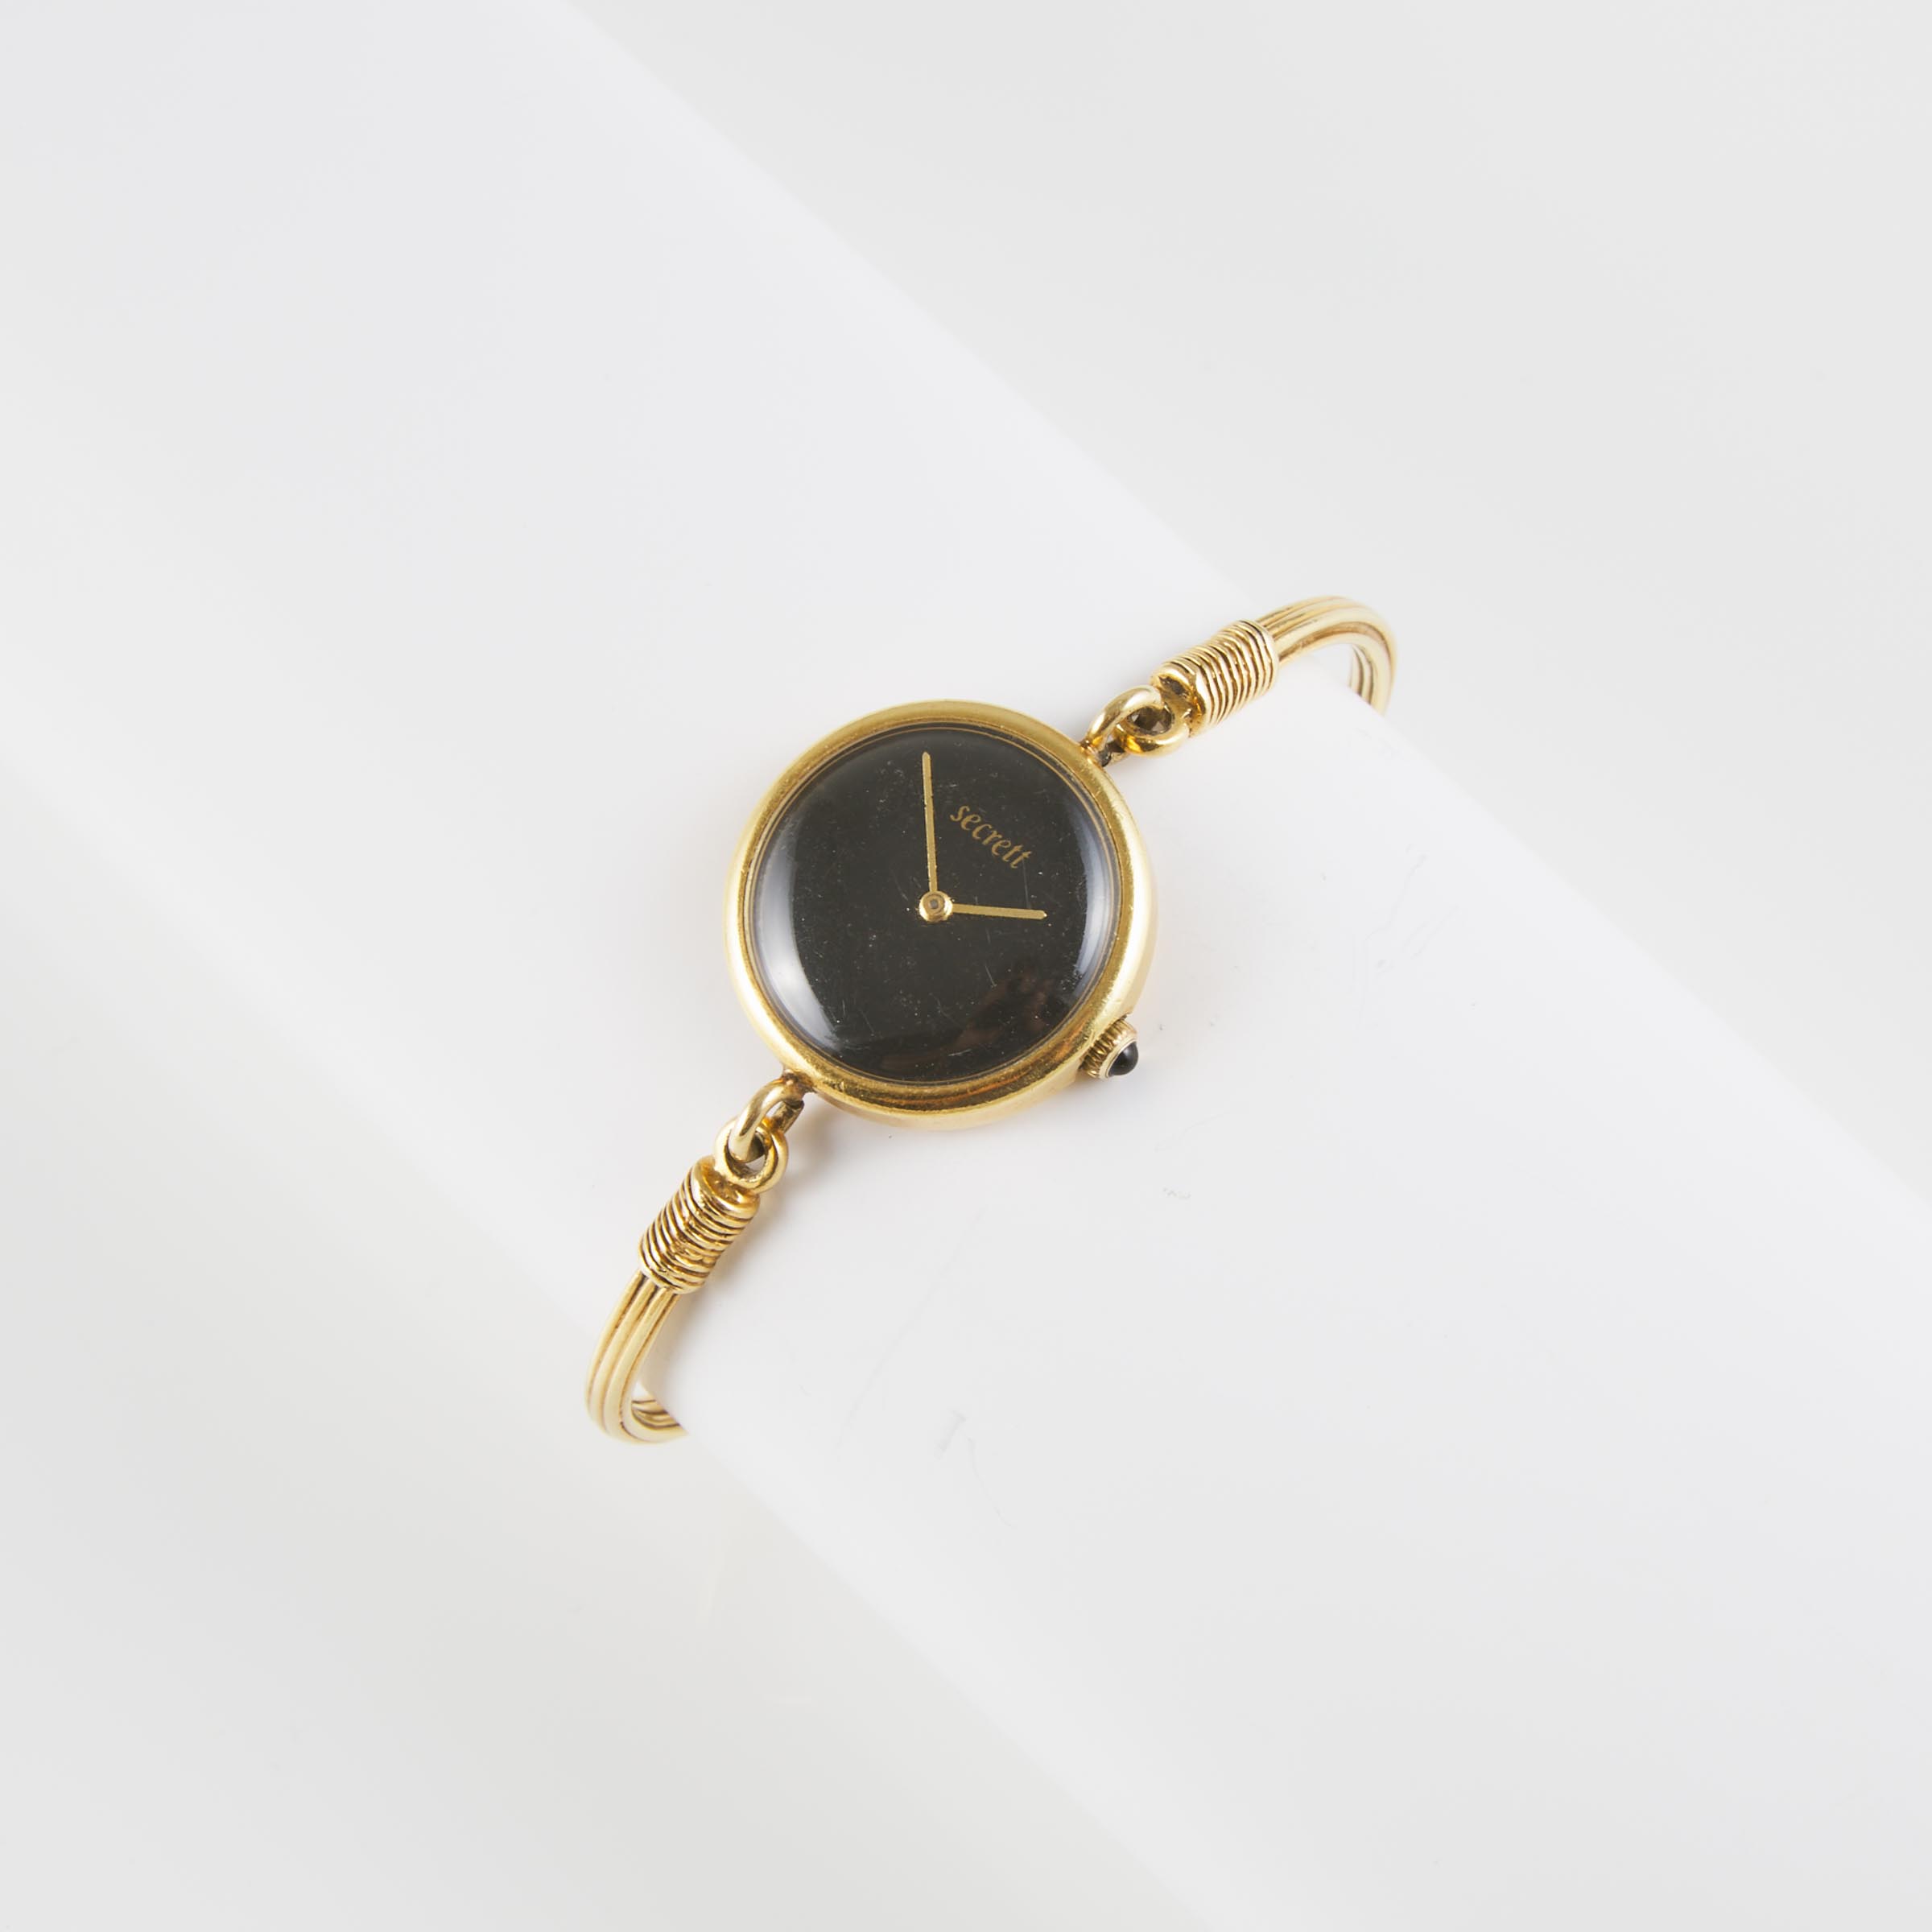 Lady's Secrett's Wristwatch